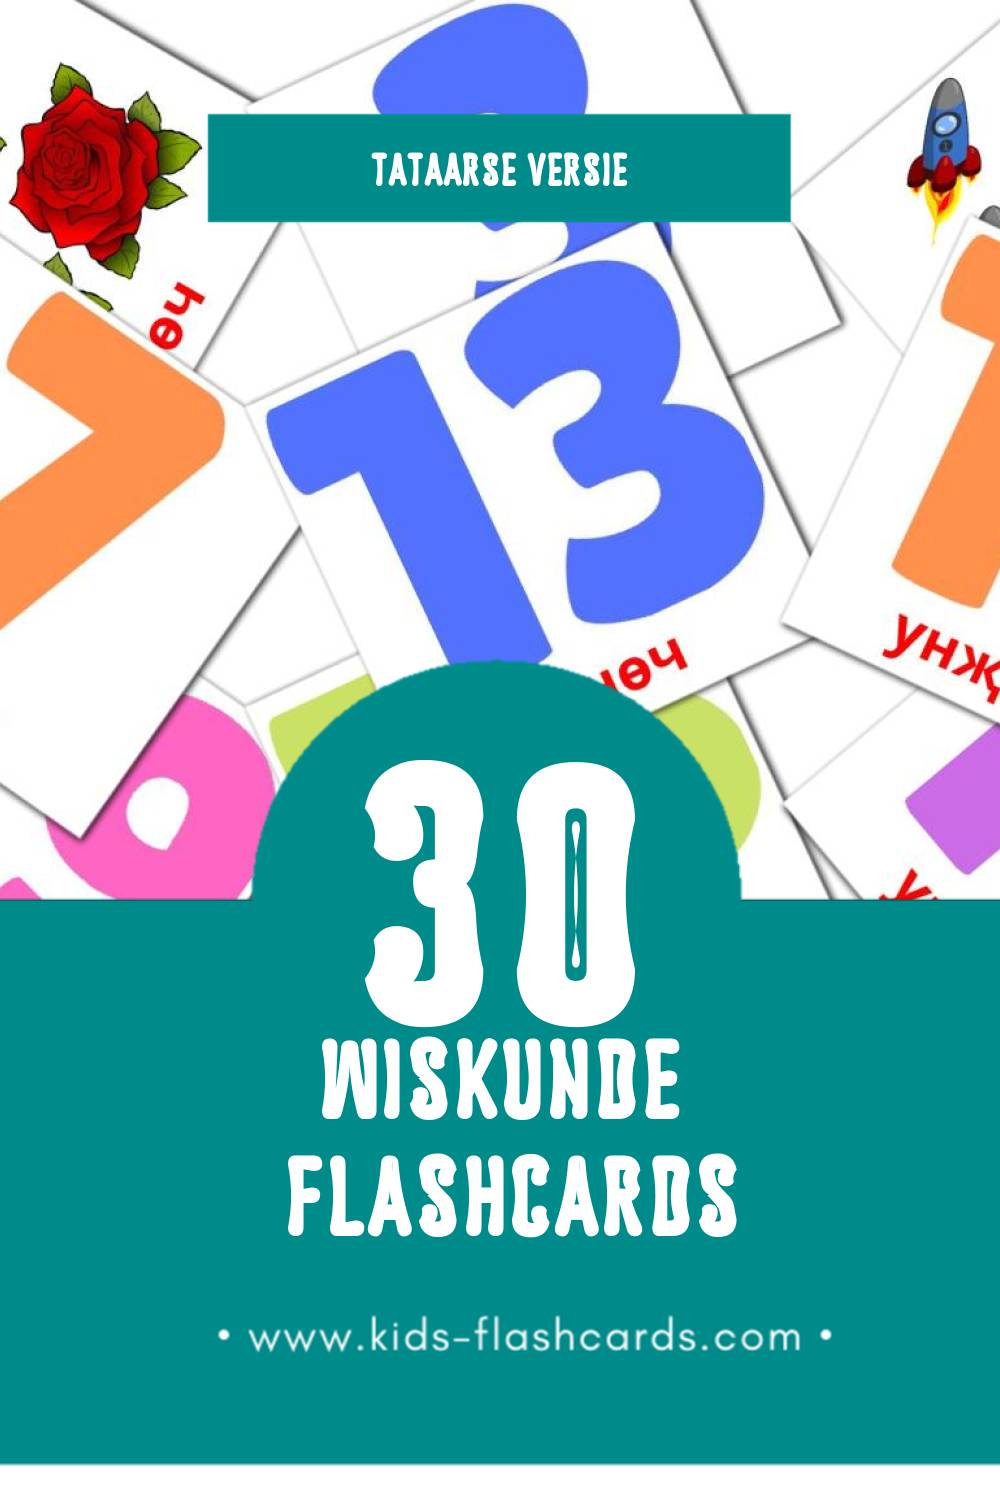 Visuele Математика Flashcards voor Kleuters (30 kaarten in het Tataars)